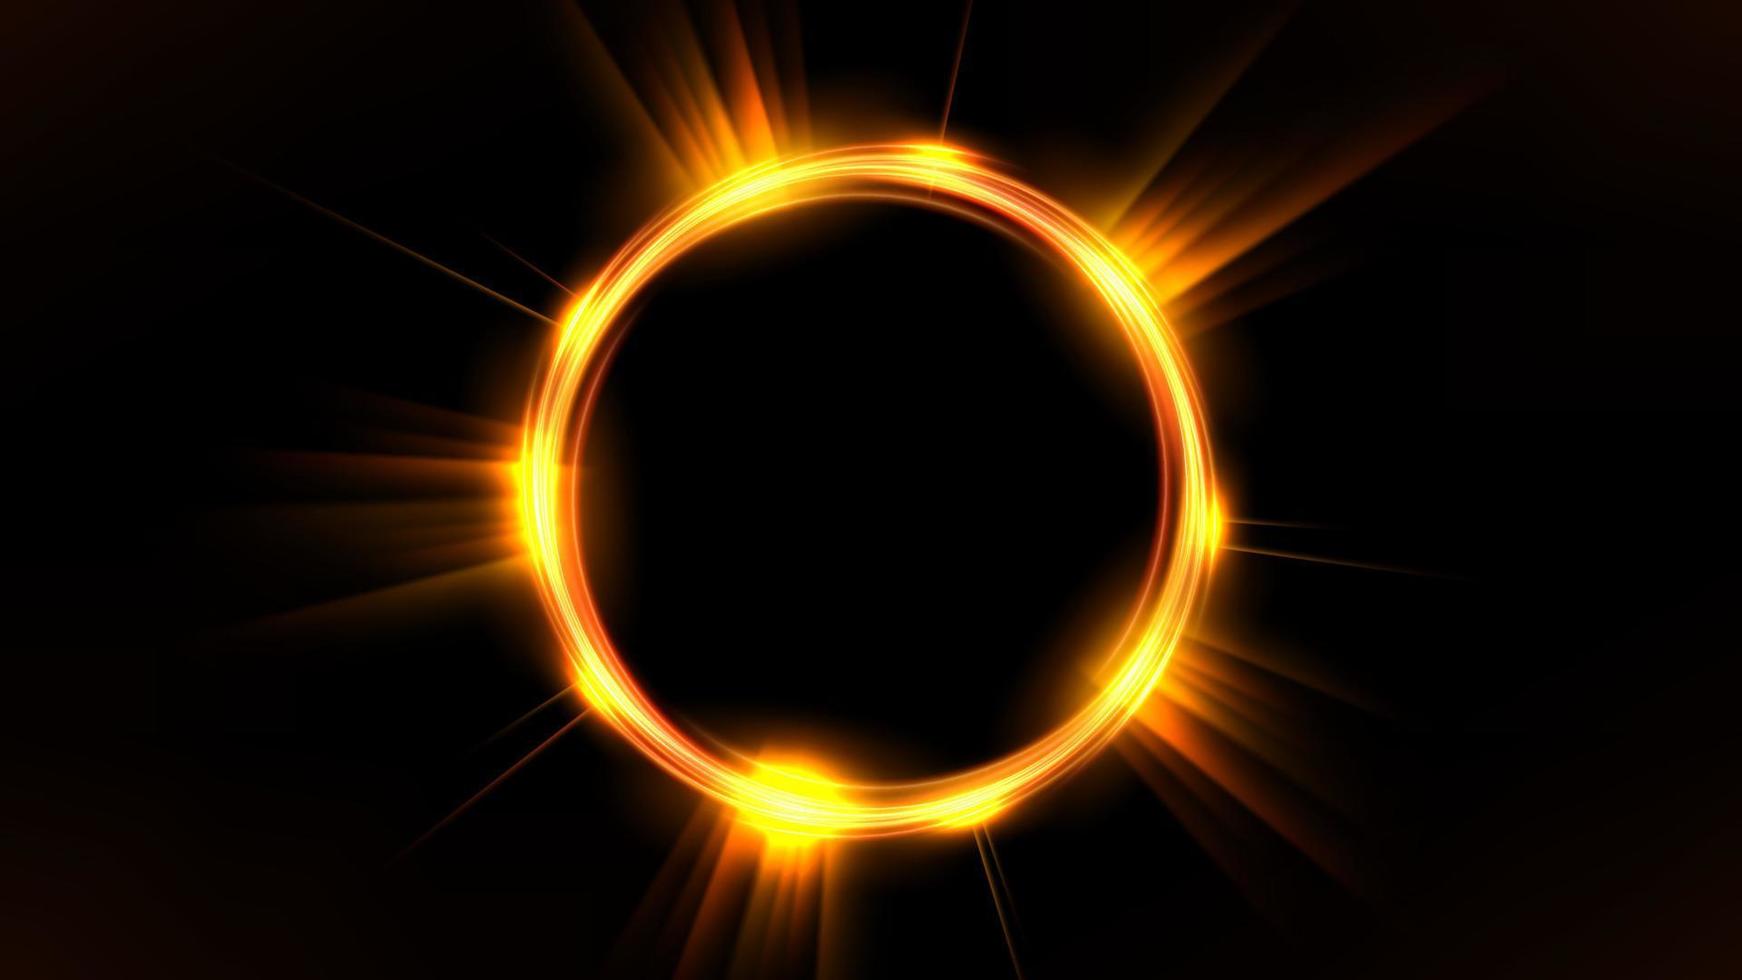 cercle lumineux doré, élégant anneau lumineux illuminé sur fond sombre. illustration vectorielle vecteur